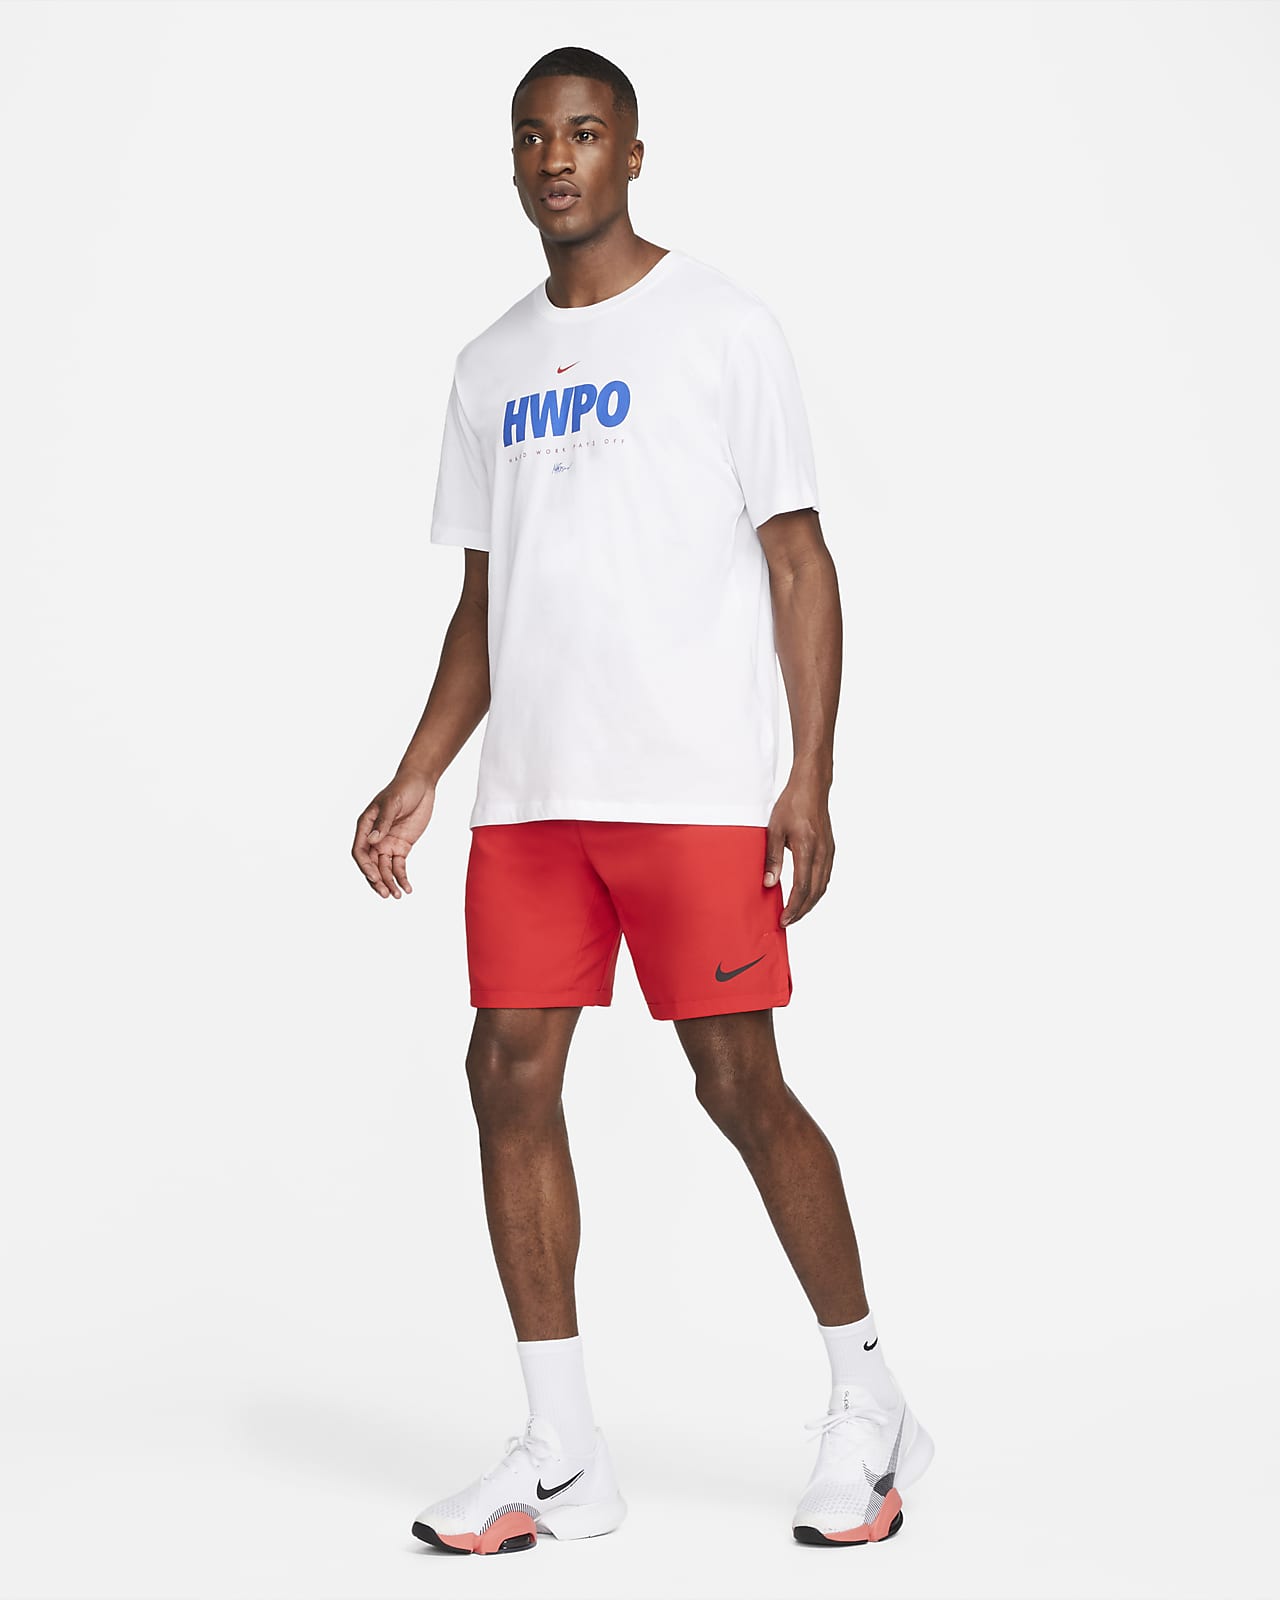 Nike Dri-FIT 'HWPO' Men's Training T-Shirt. Nike BE